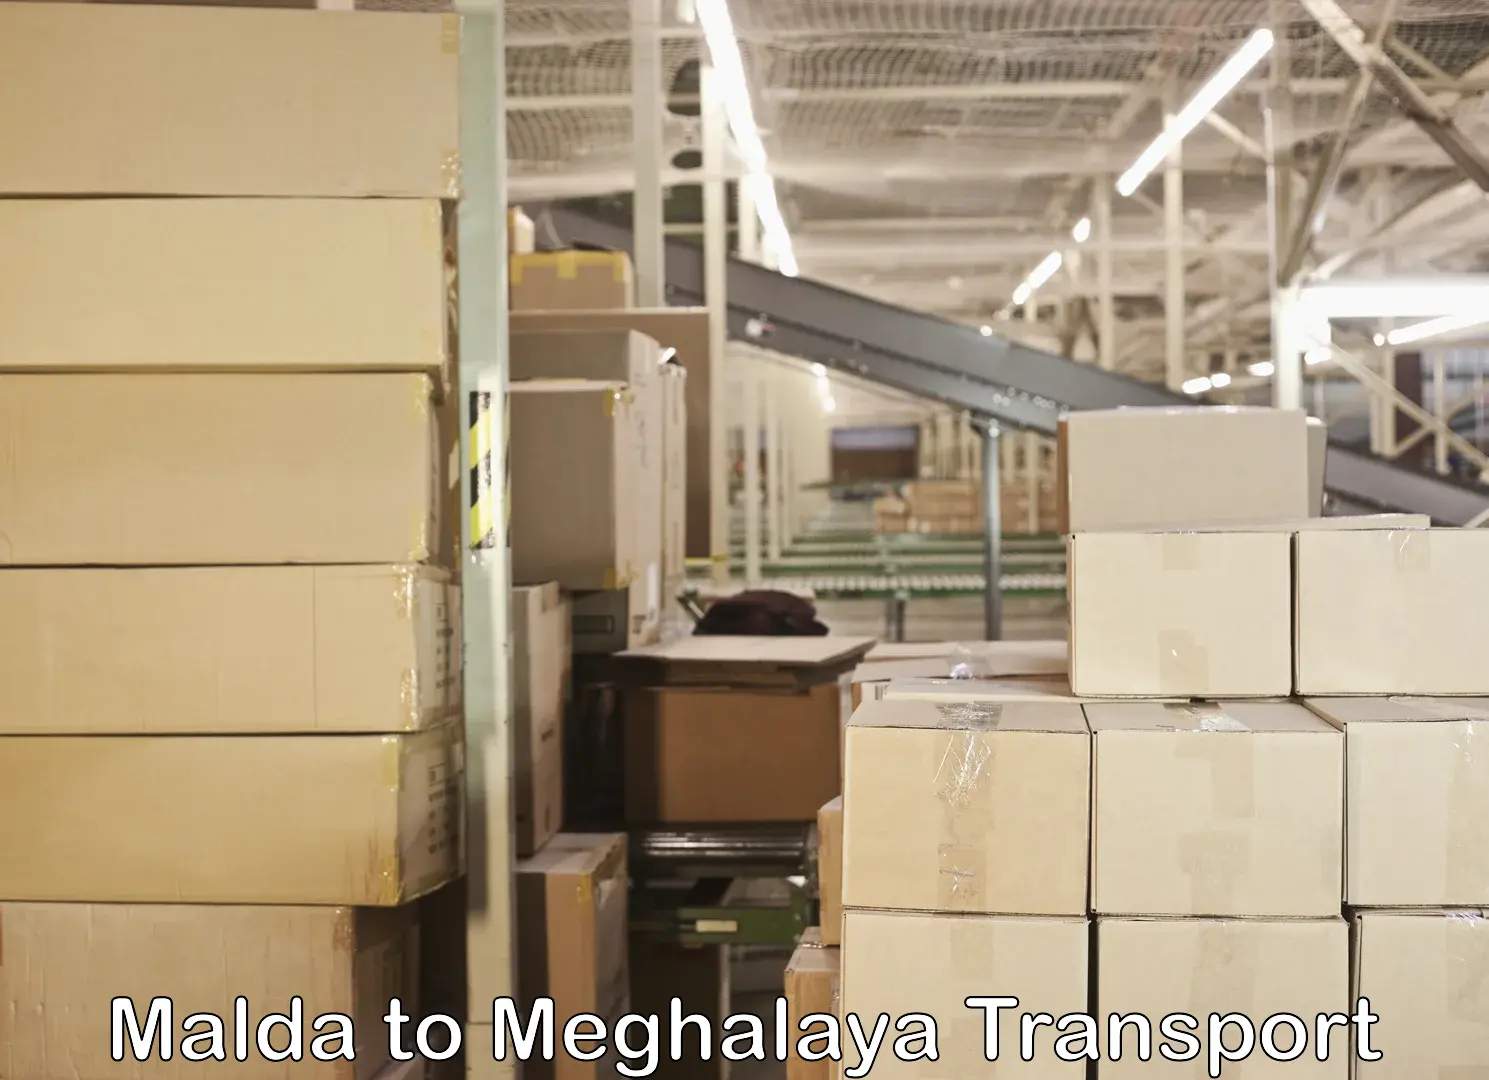 Furniture transport service Malda to Meghalaya